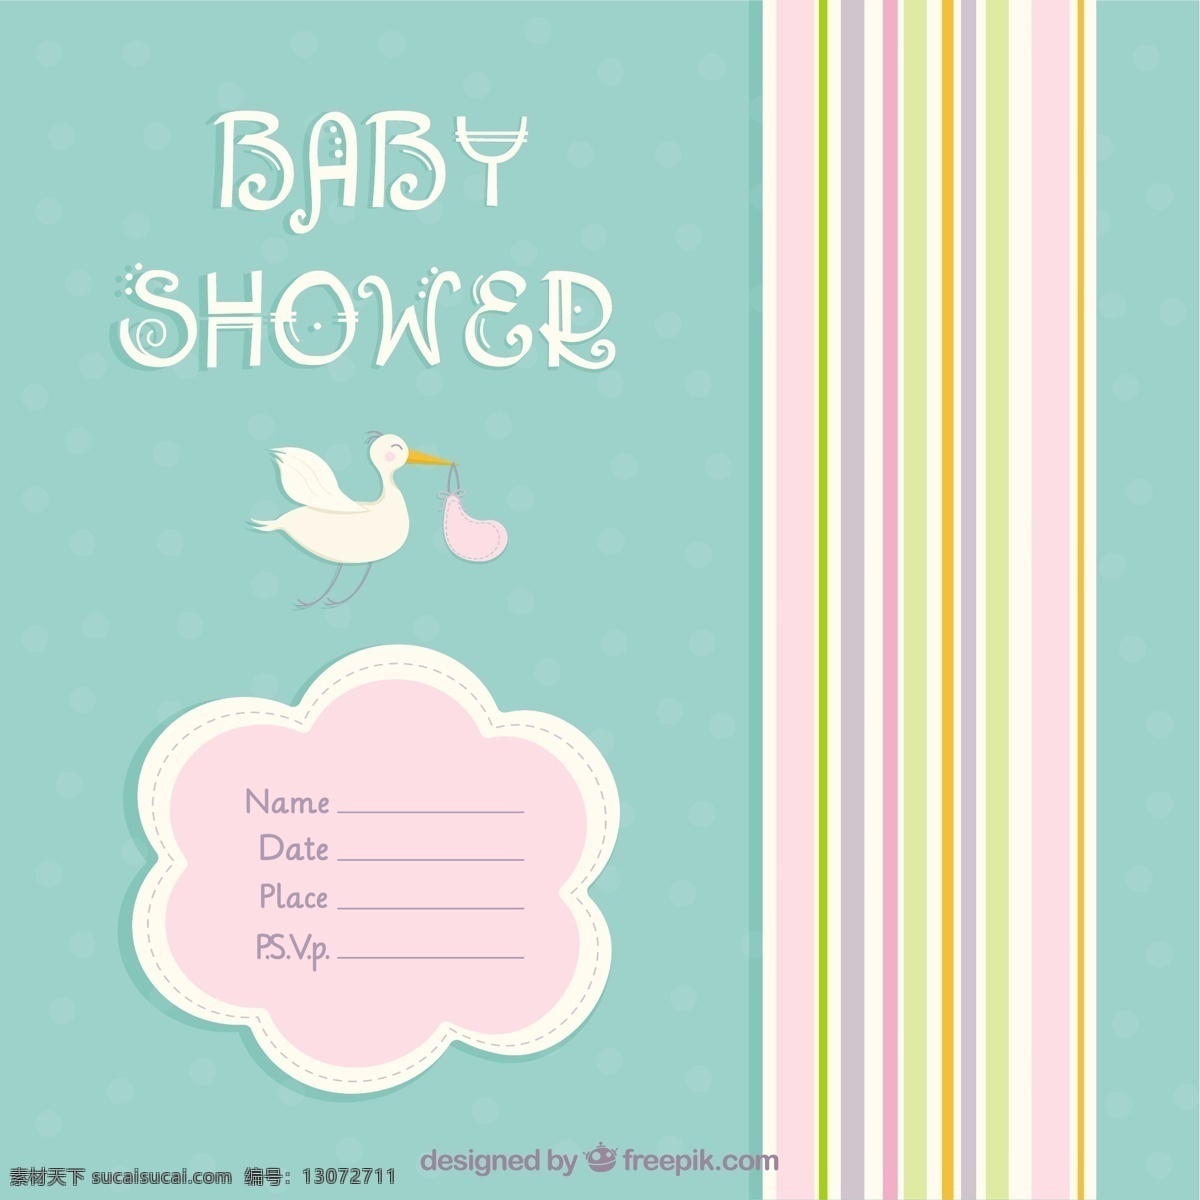 可爱 婴儿 洗澡 卡 鹳 宝贝 标签 邀请卡 婴儿淋浴 模板 线 可爱的 新的 条纹 宝宝卡 出生 青色 天蓝色